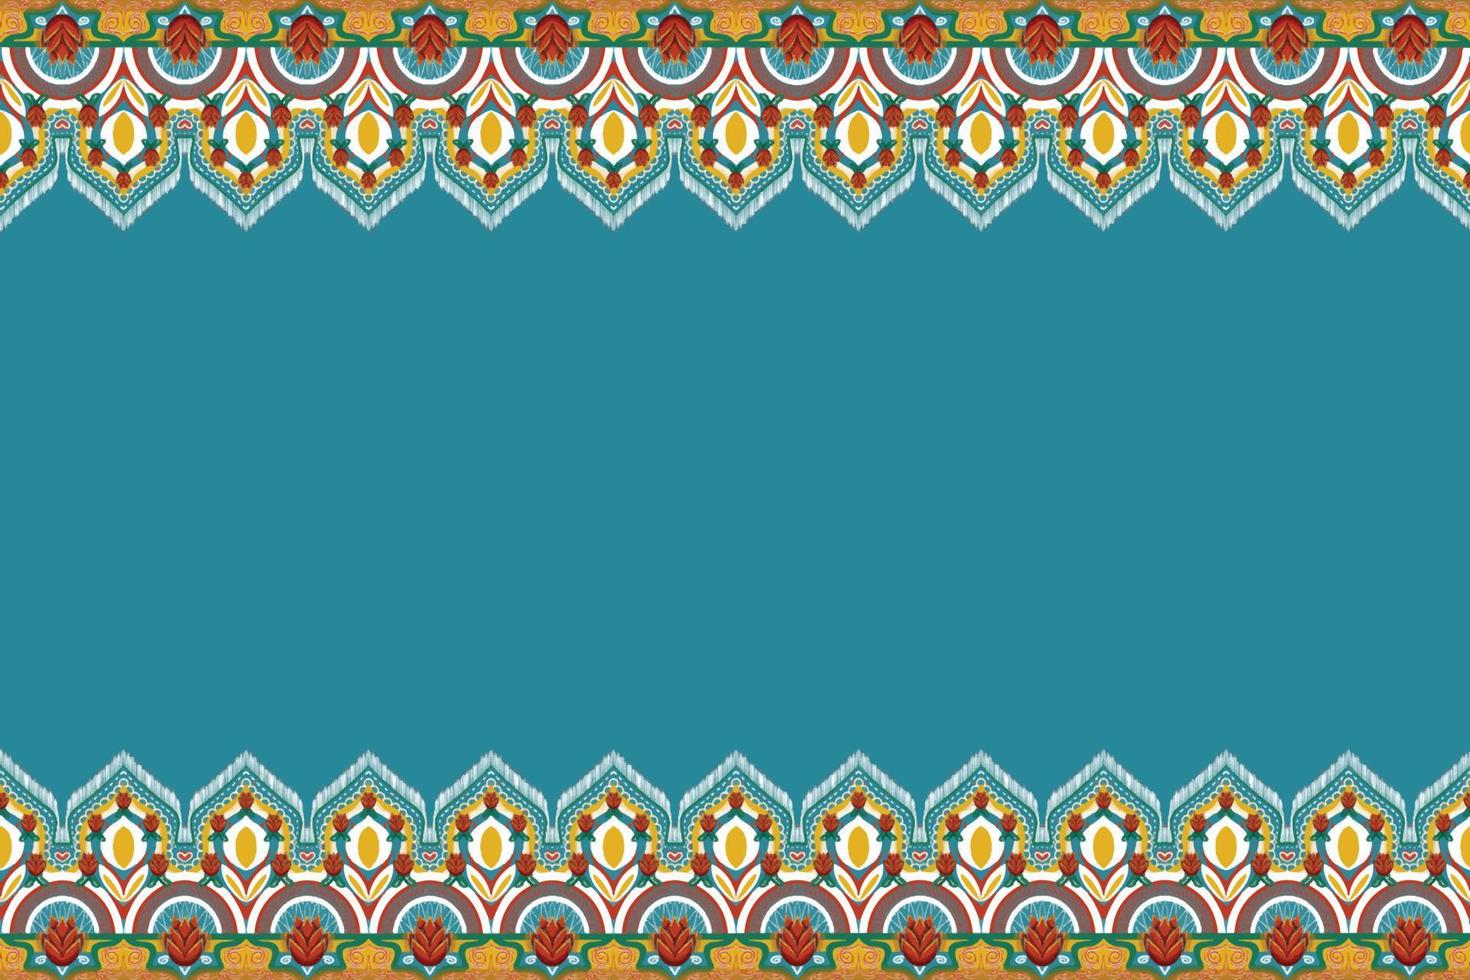 fiore rosso su blu indaco, giallo, verde geometrico etnico orientale modello tradizionale design per sfondo, moquette, carta da parati, abbigliamento, avvolgimento, batik, tessuto, illustrazione vettoriale stile ricamo